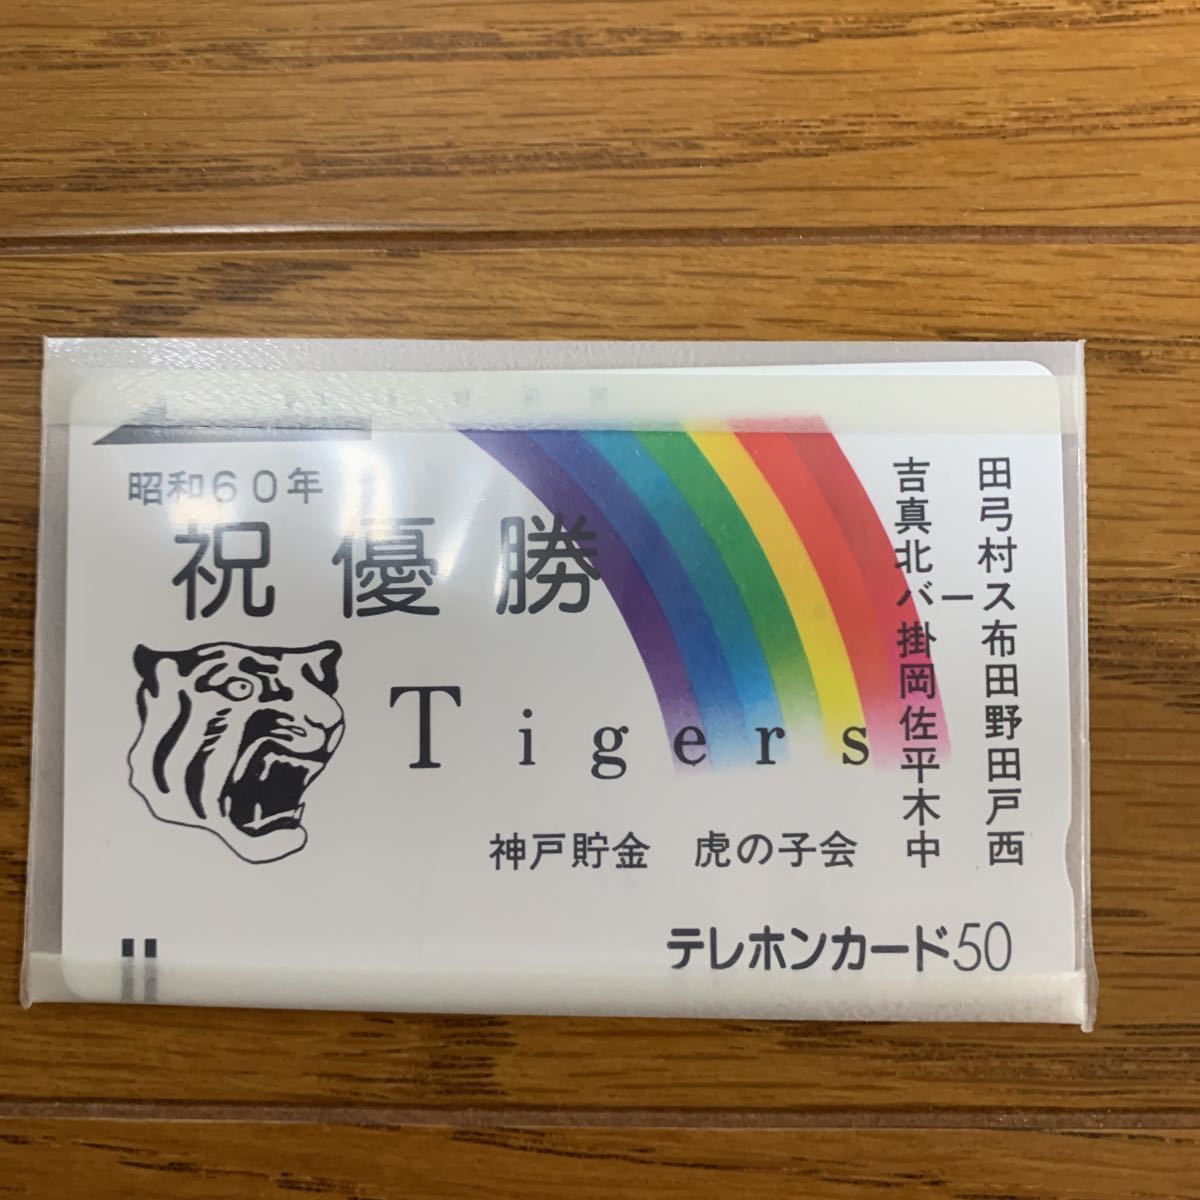 昭和６０年 祝優勝 阪神タイガース テレカ５０の画像3